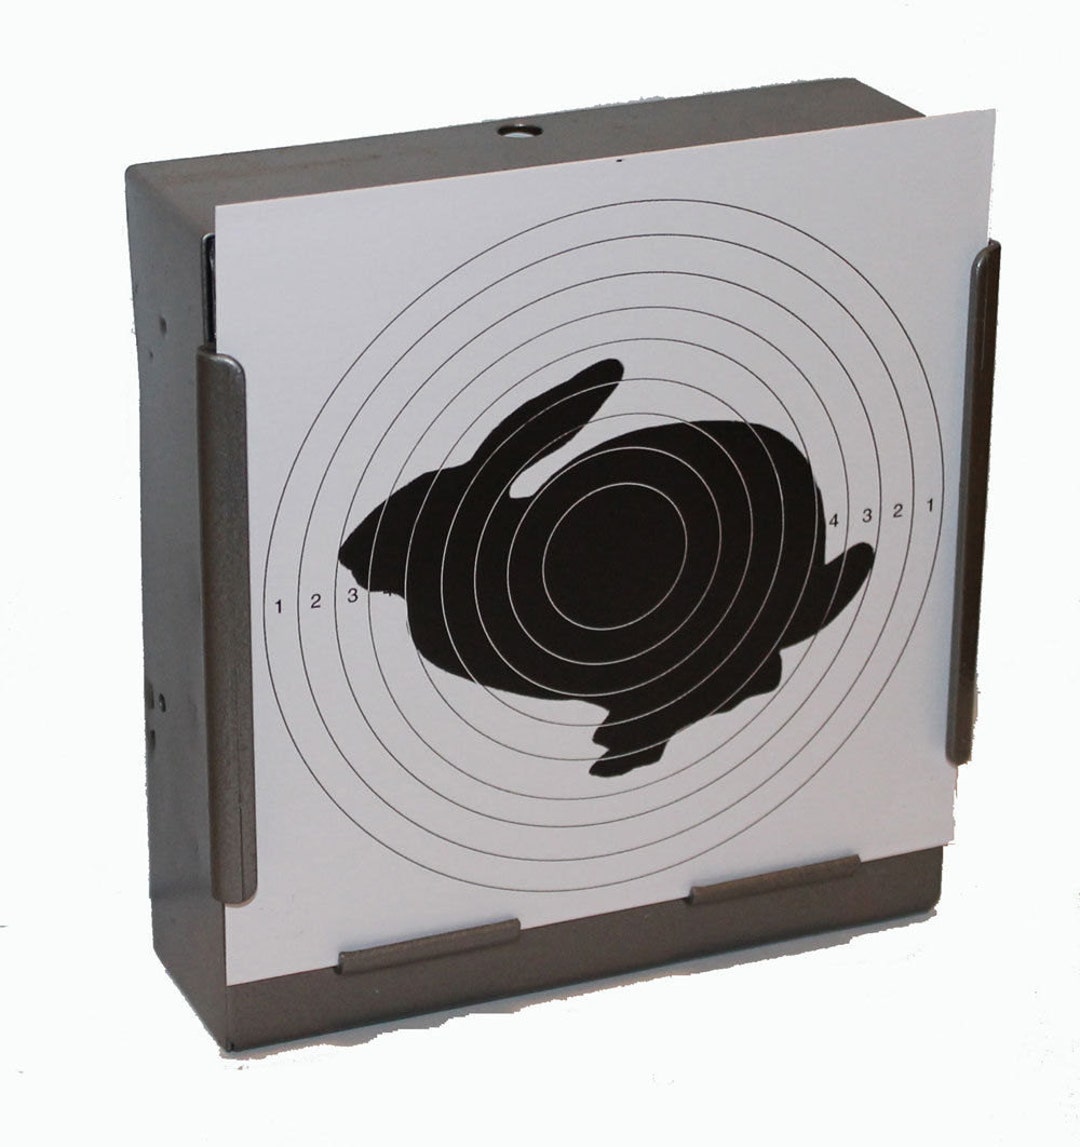 100 x carabina ad aria compressa disegno bersaglio coniglio su cartoncino  14 x 14 cm -  Italia